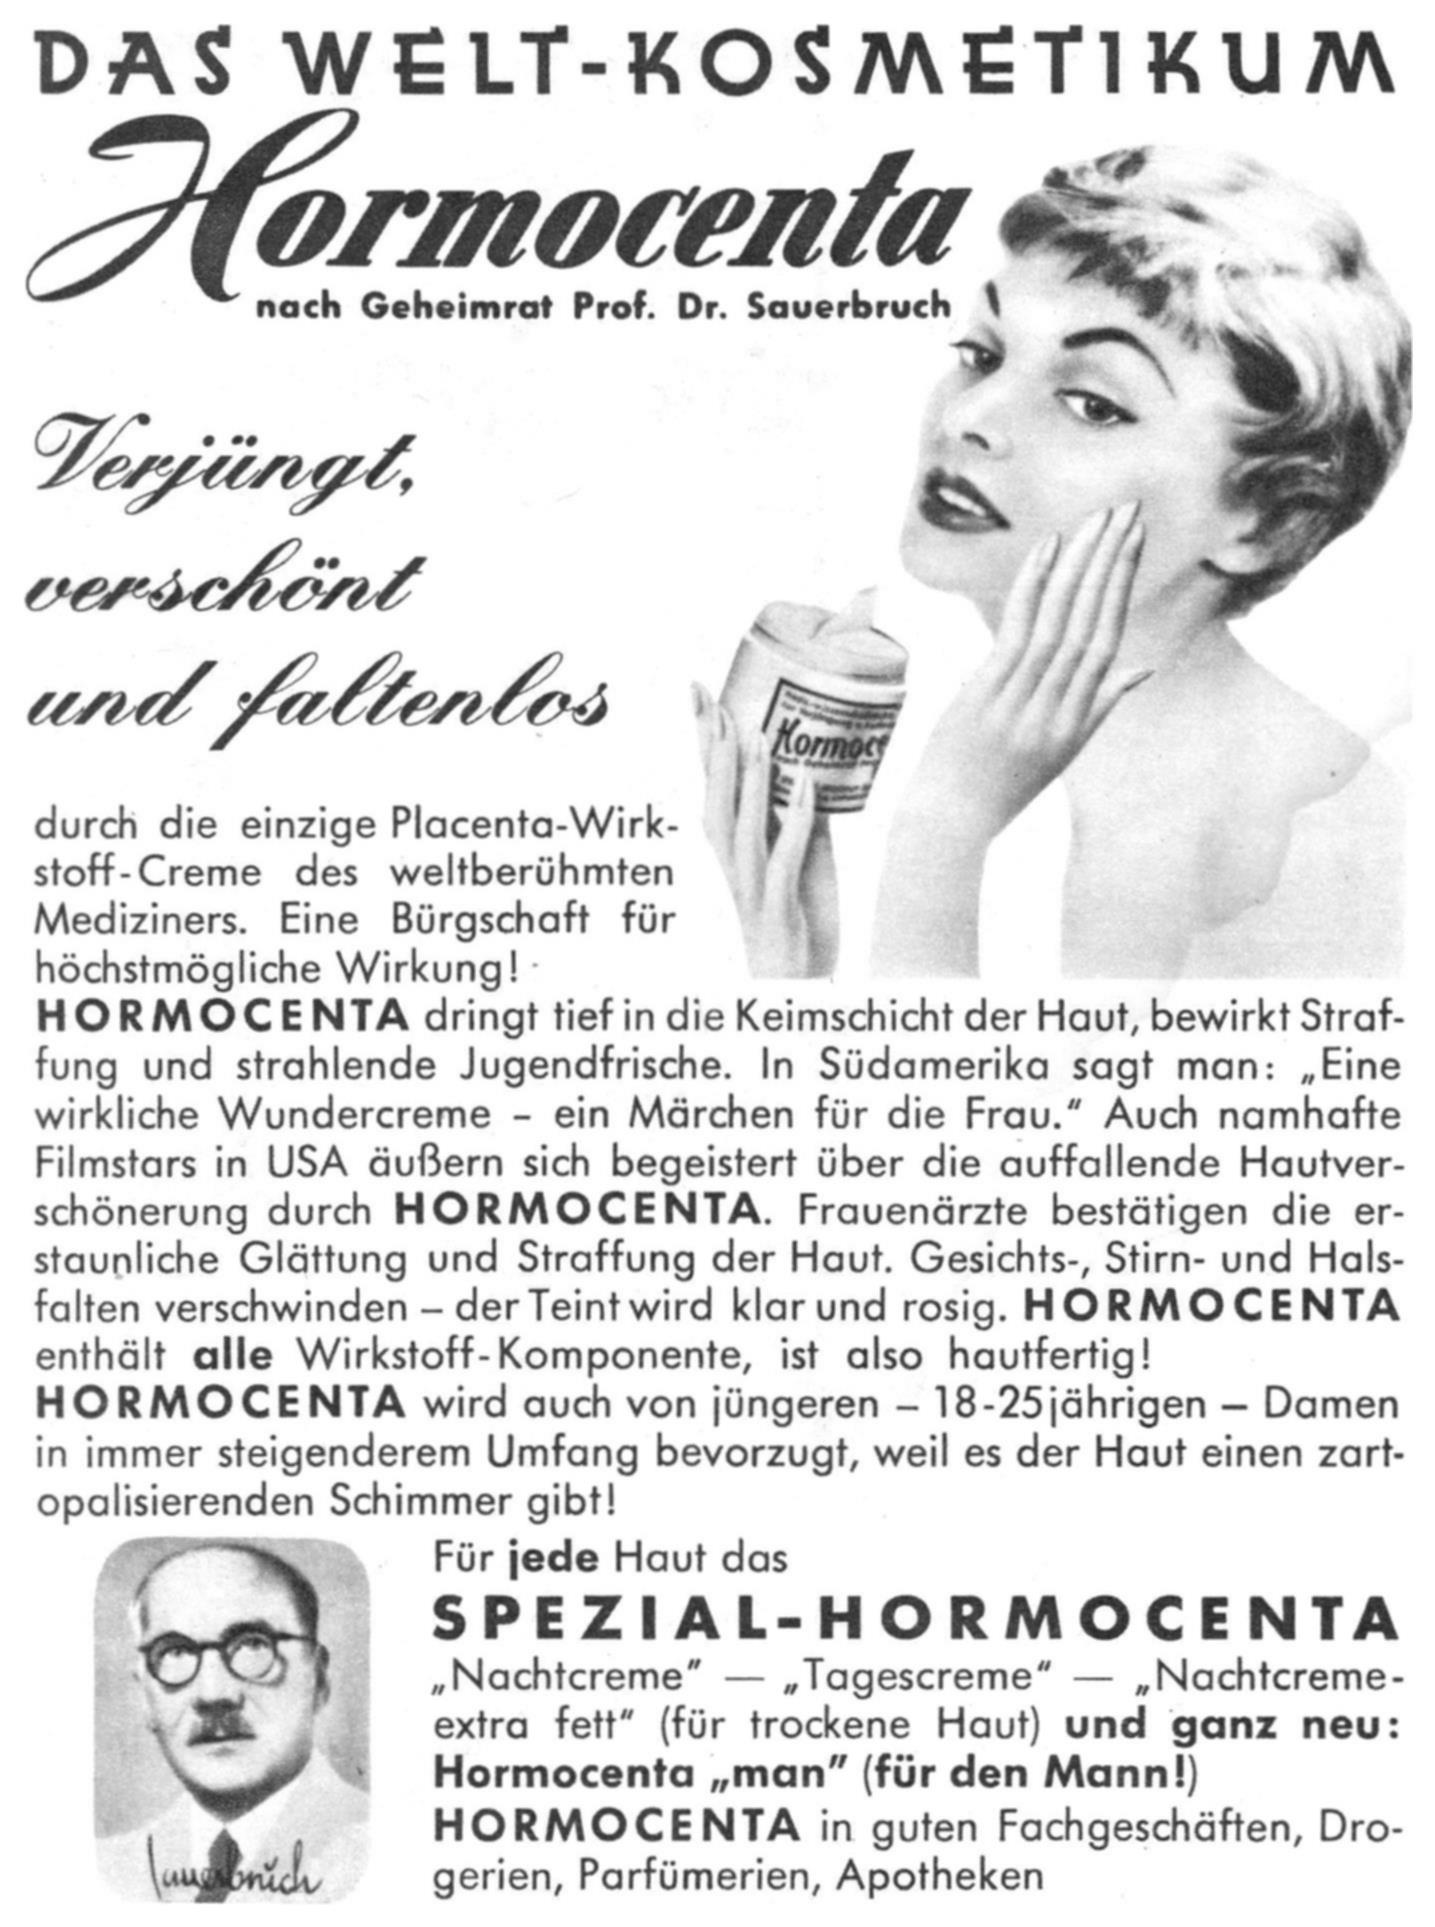 Hormocenta 1961 01.jpg